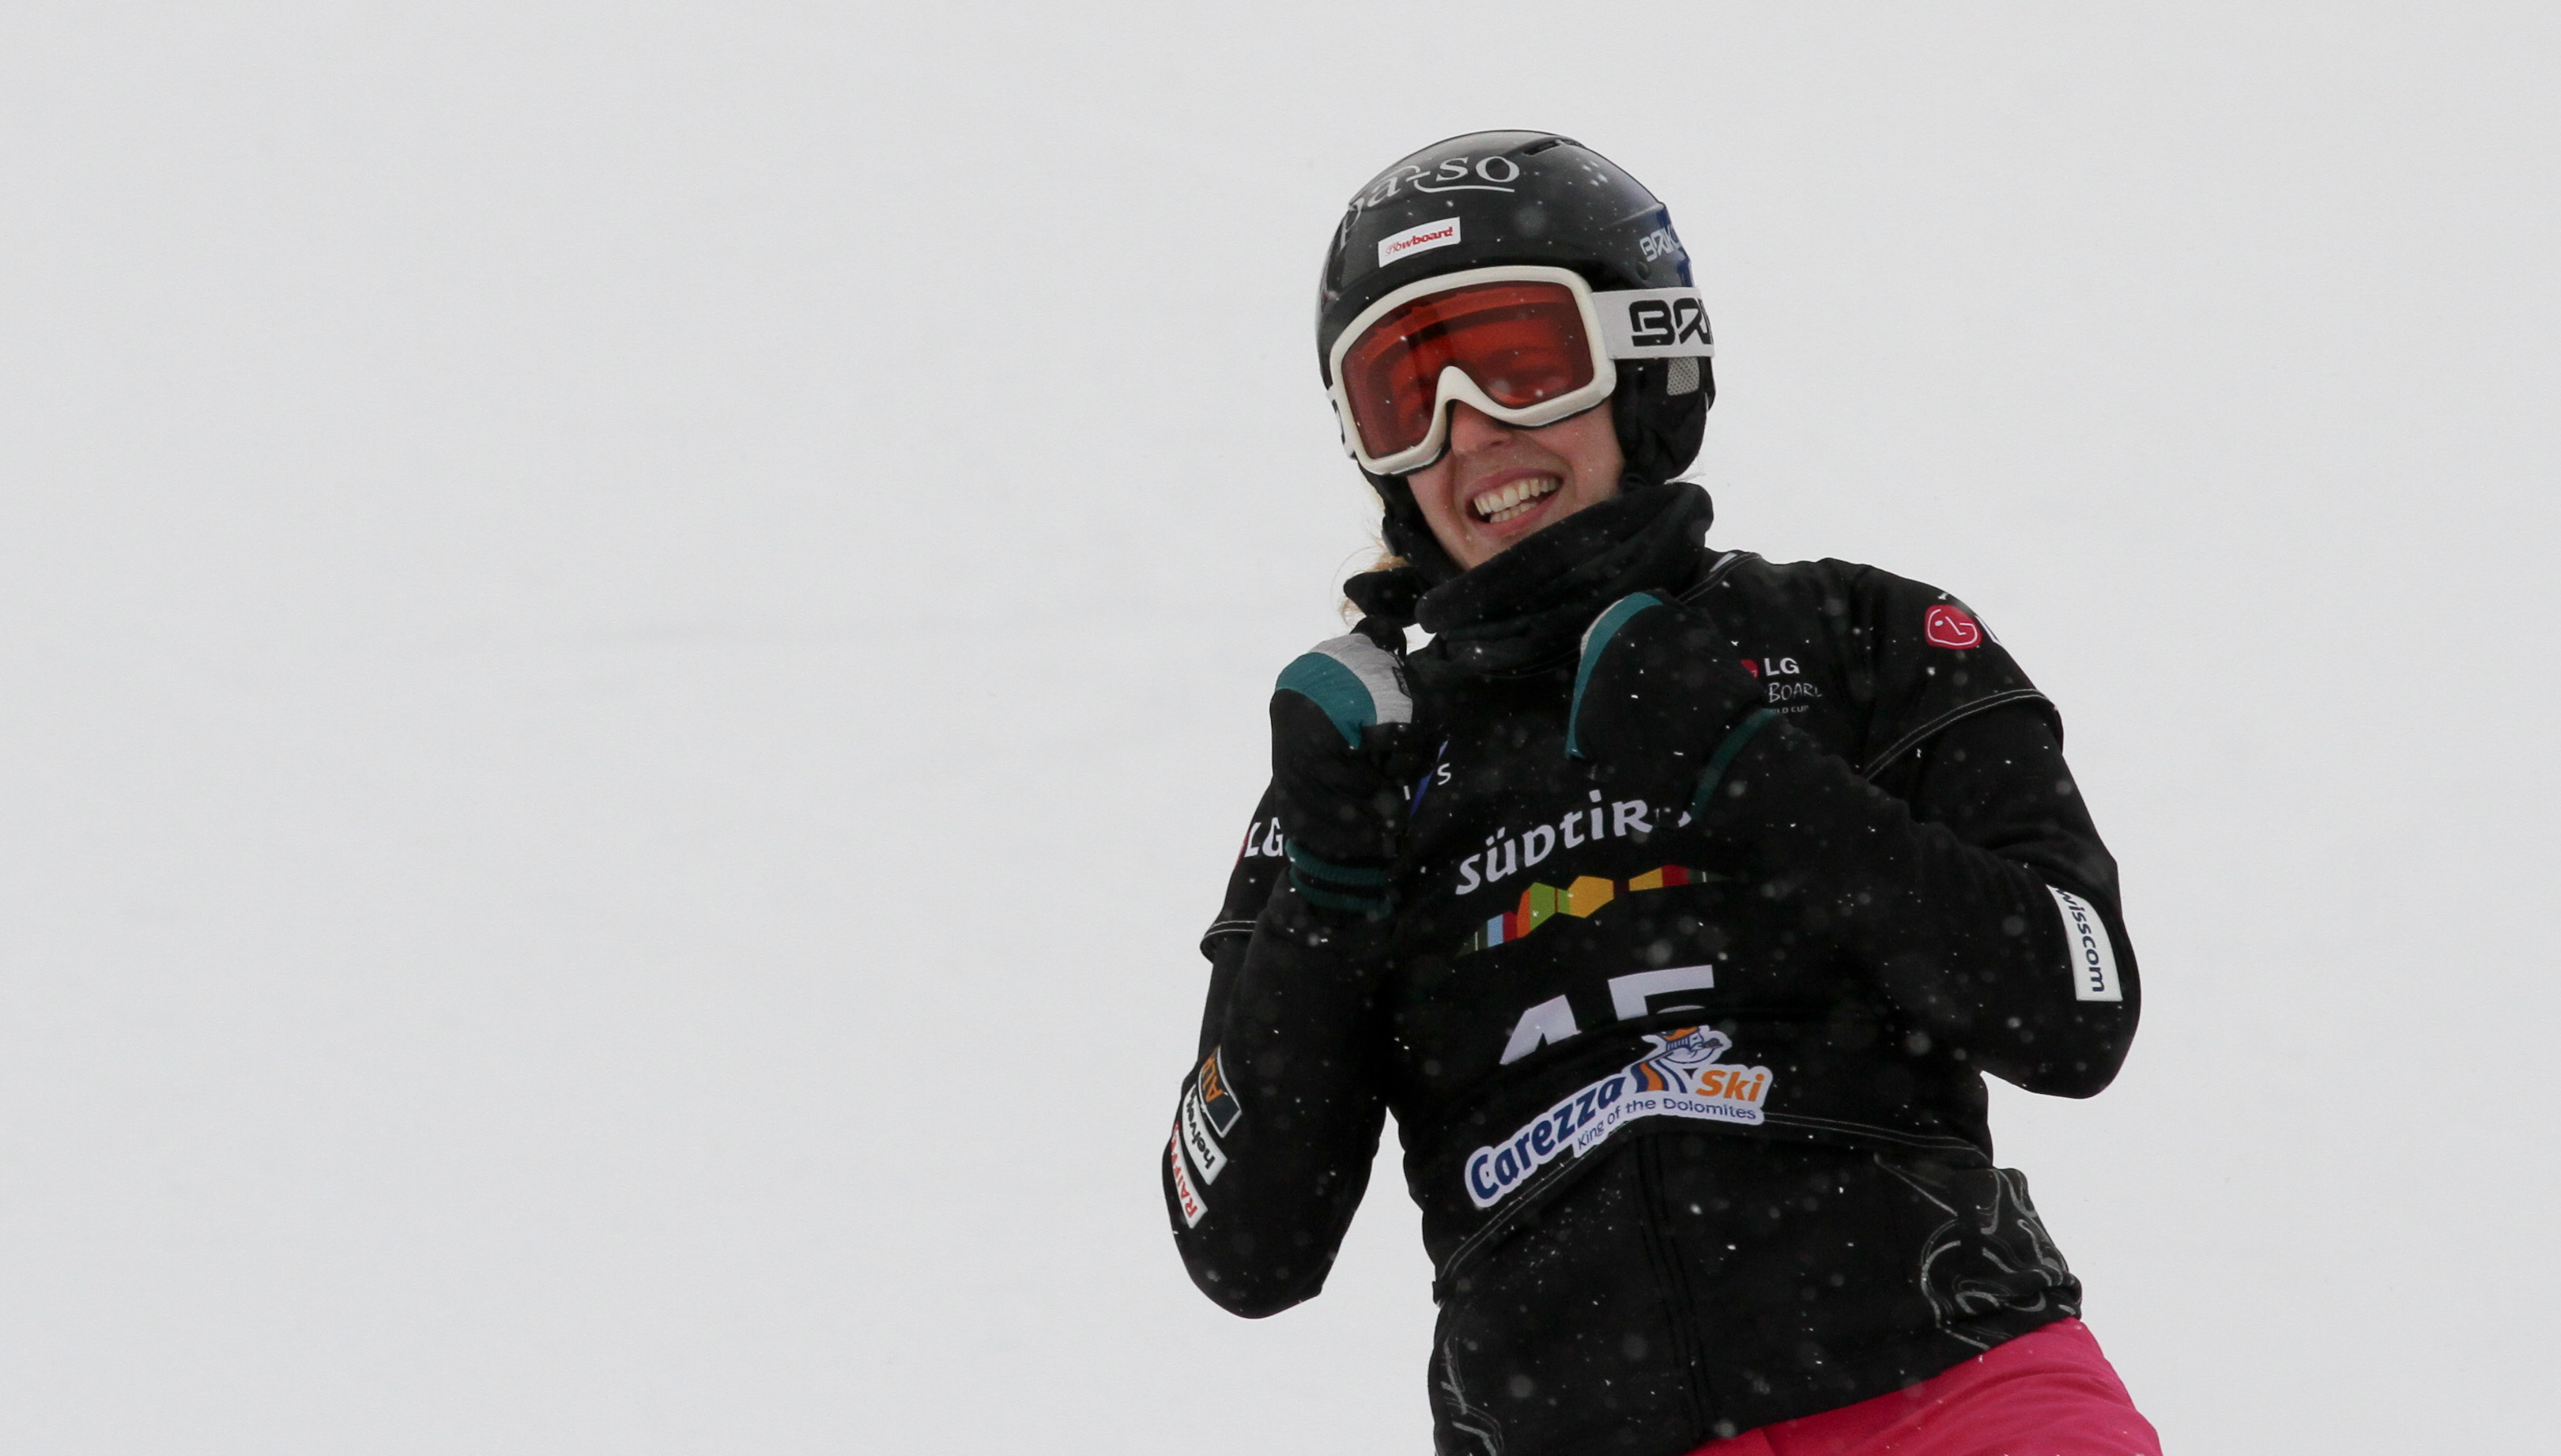 Die Freude nach dem Sieg beim Weltcup Parallelslalom in Carezza steht Patrizia Kummer ins Gesicht geschrieben.